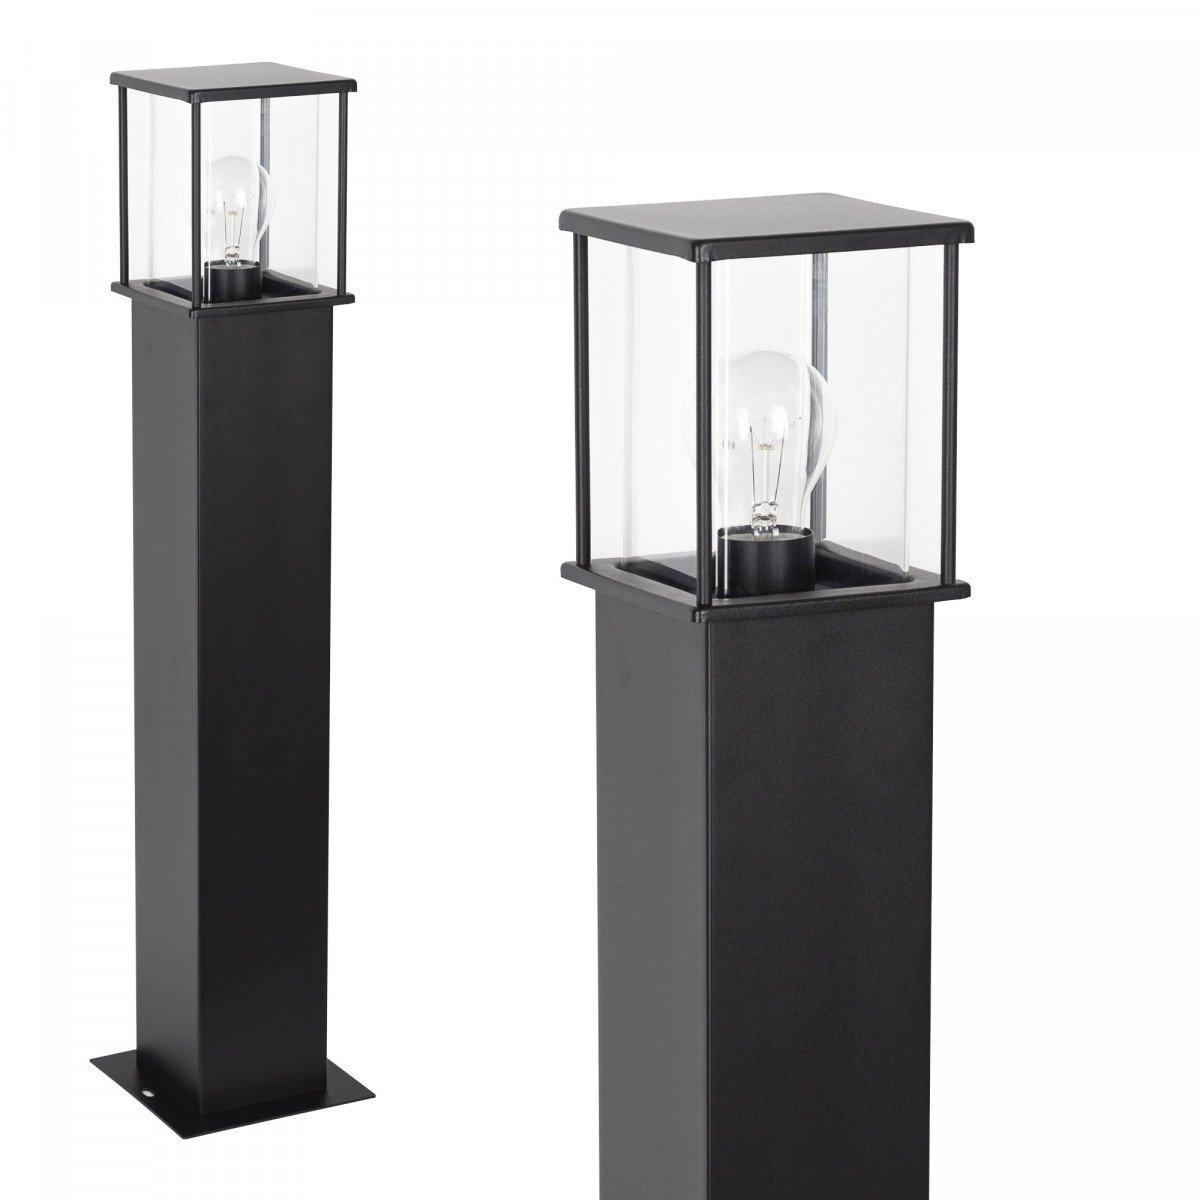 Zwarte tuinlamp 70 cm hoog strak design verlichtingsarmatuur voor buiten vierkante paal met box design lantaarnkap met heldere beglazing rondom lichtval